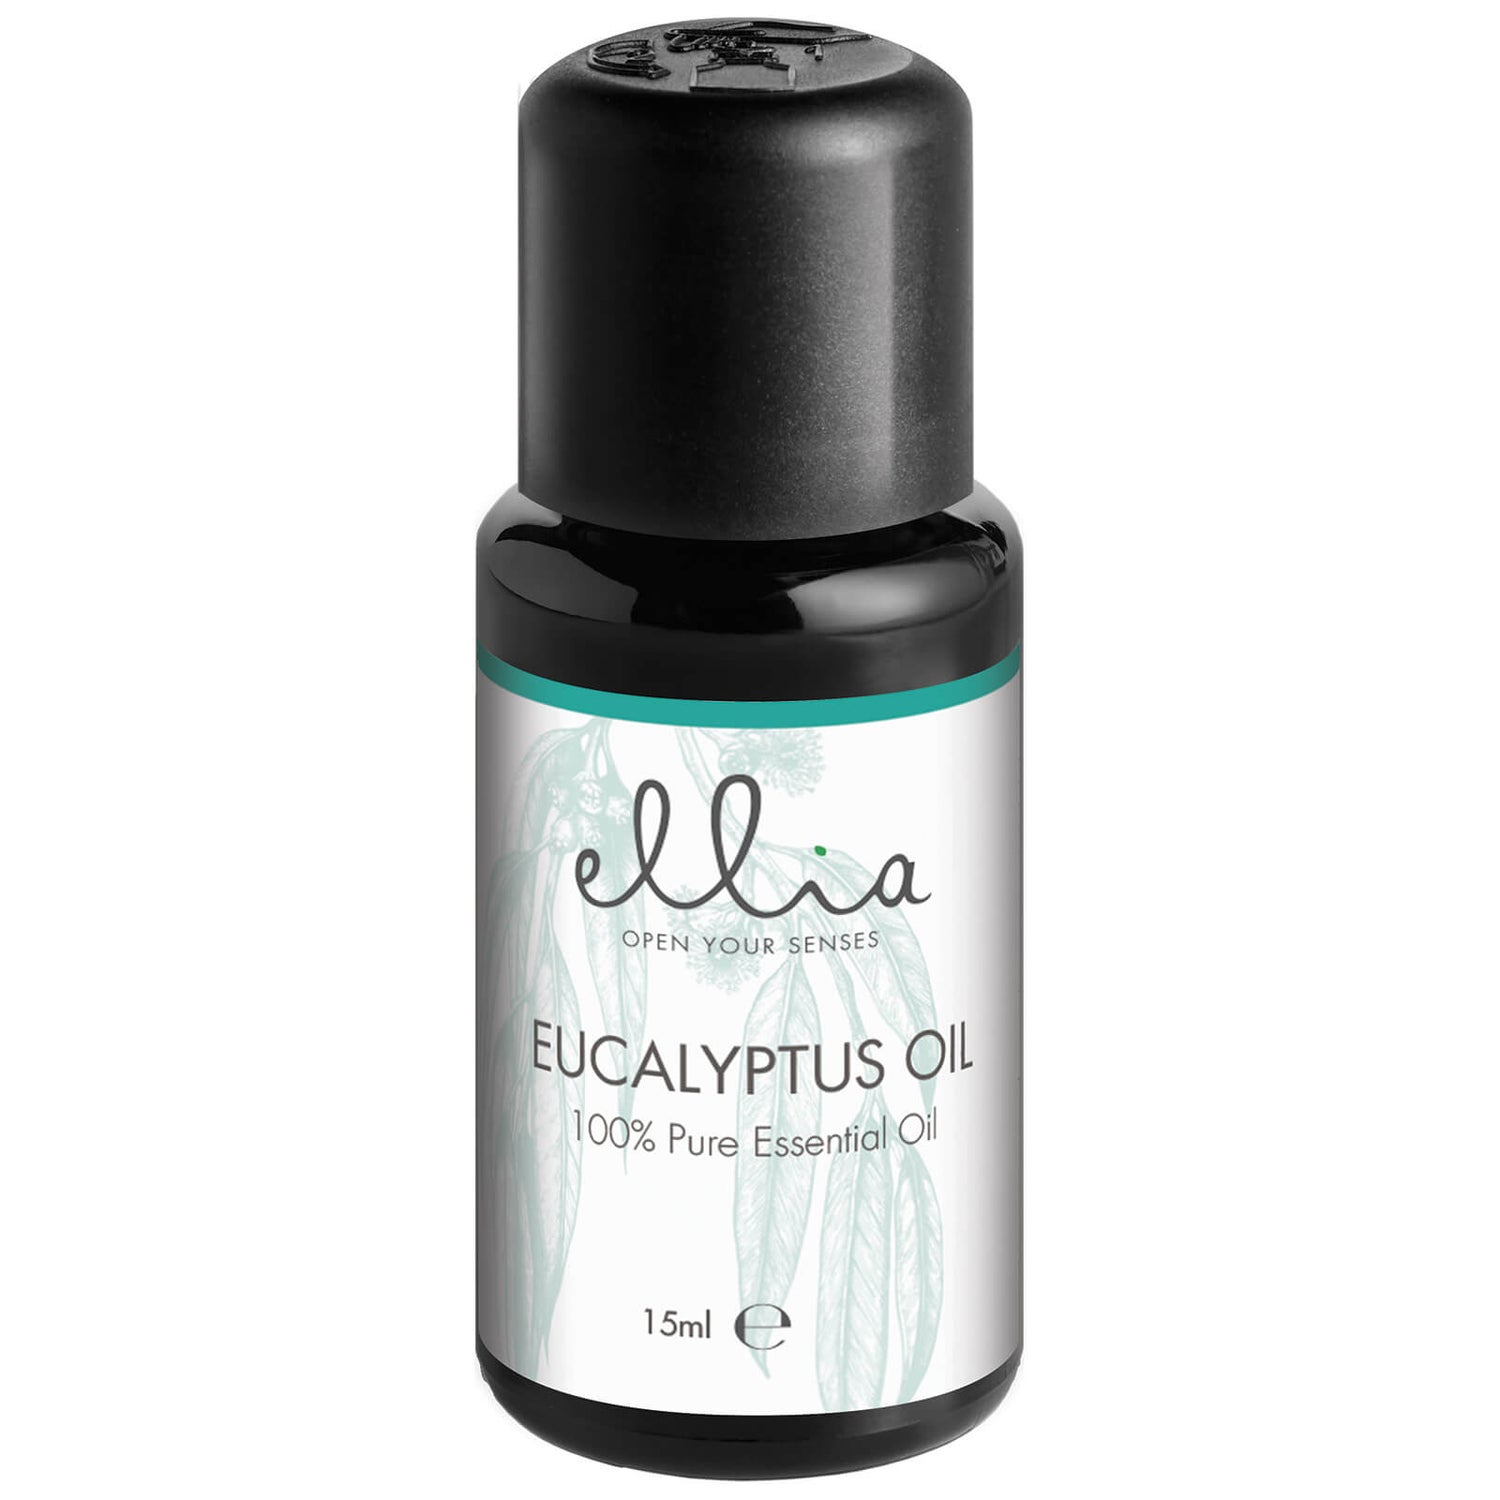 Ellia Aromatherapy mix di oli essenziali per diffusori di aromi - Eucalipto  15 ml - Spedizione GRATIS